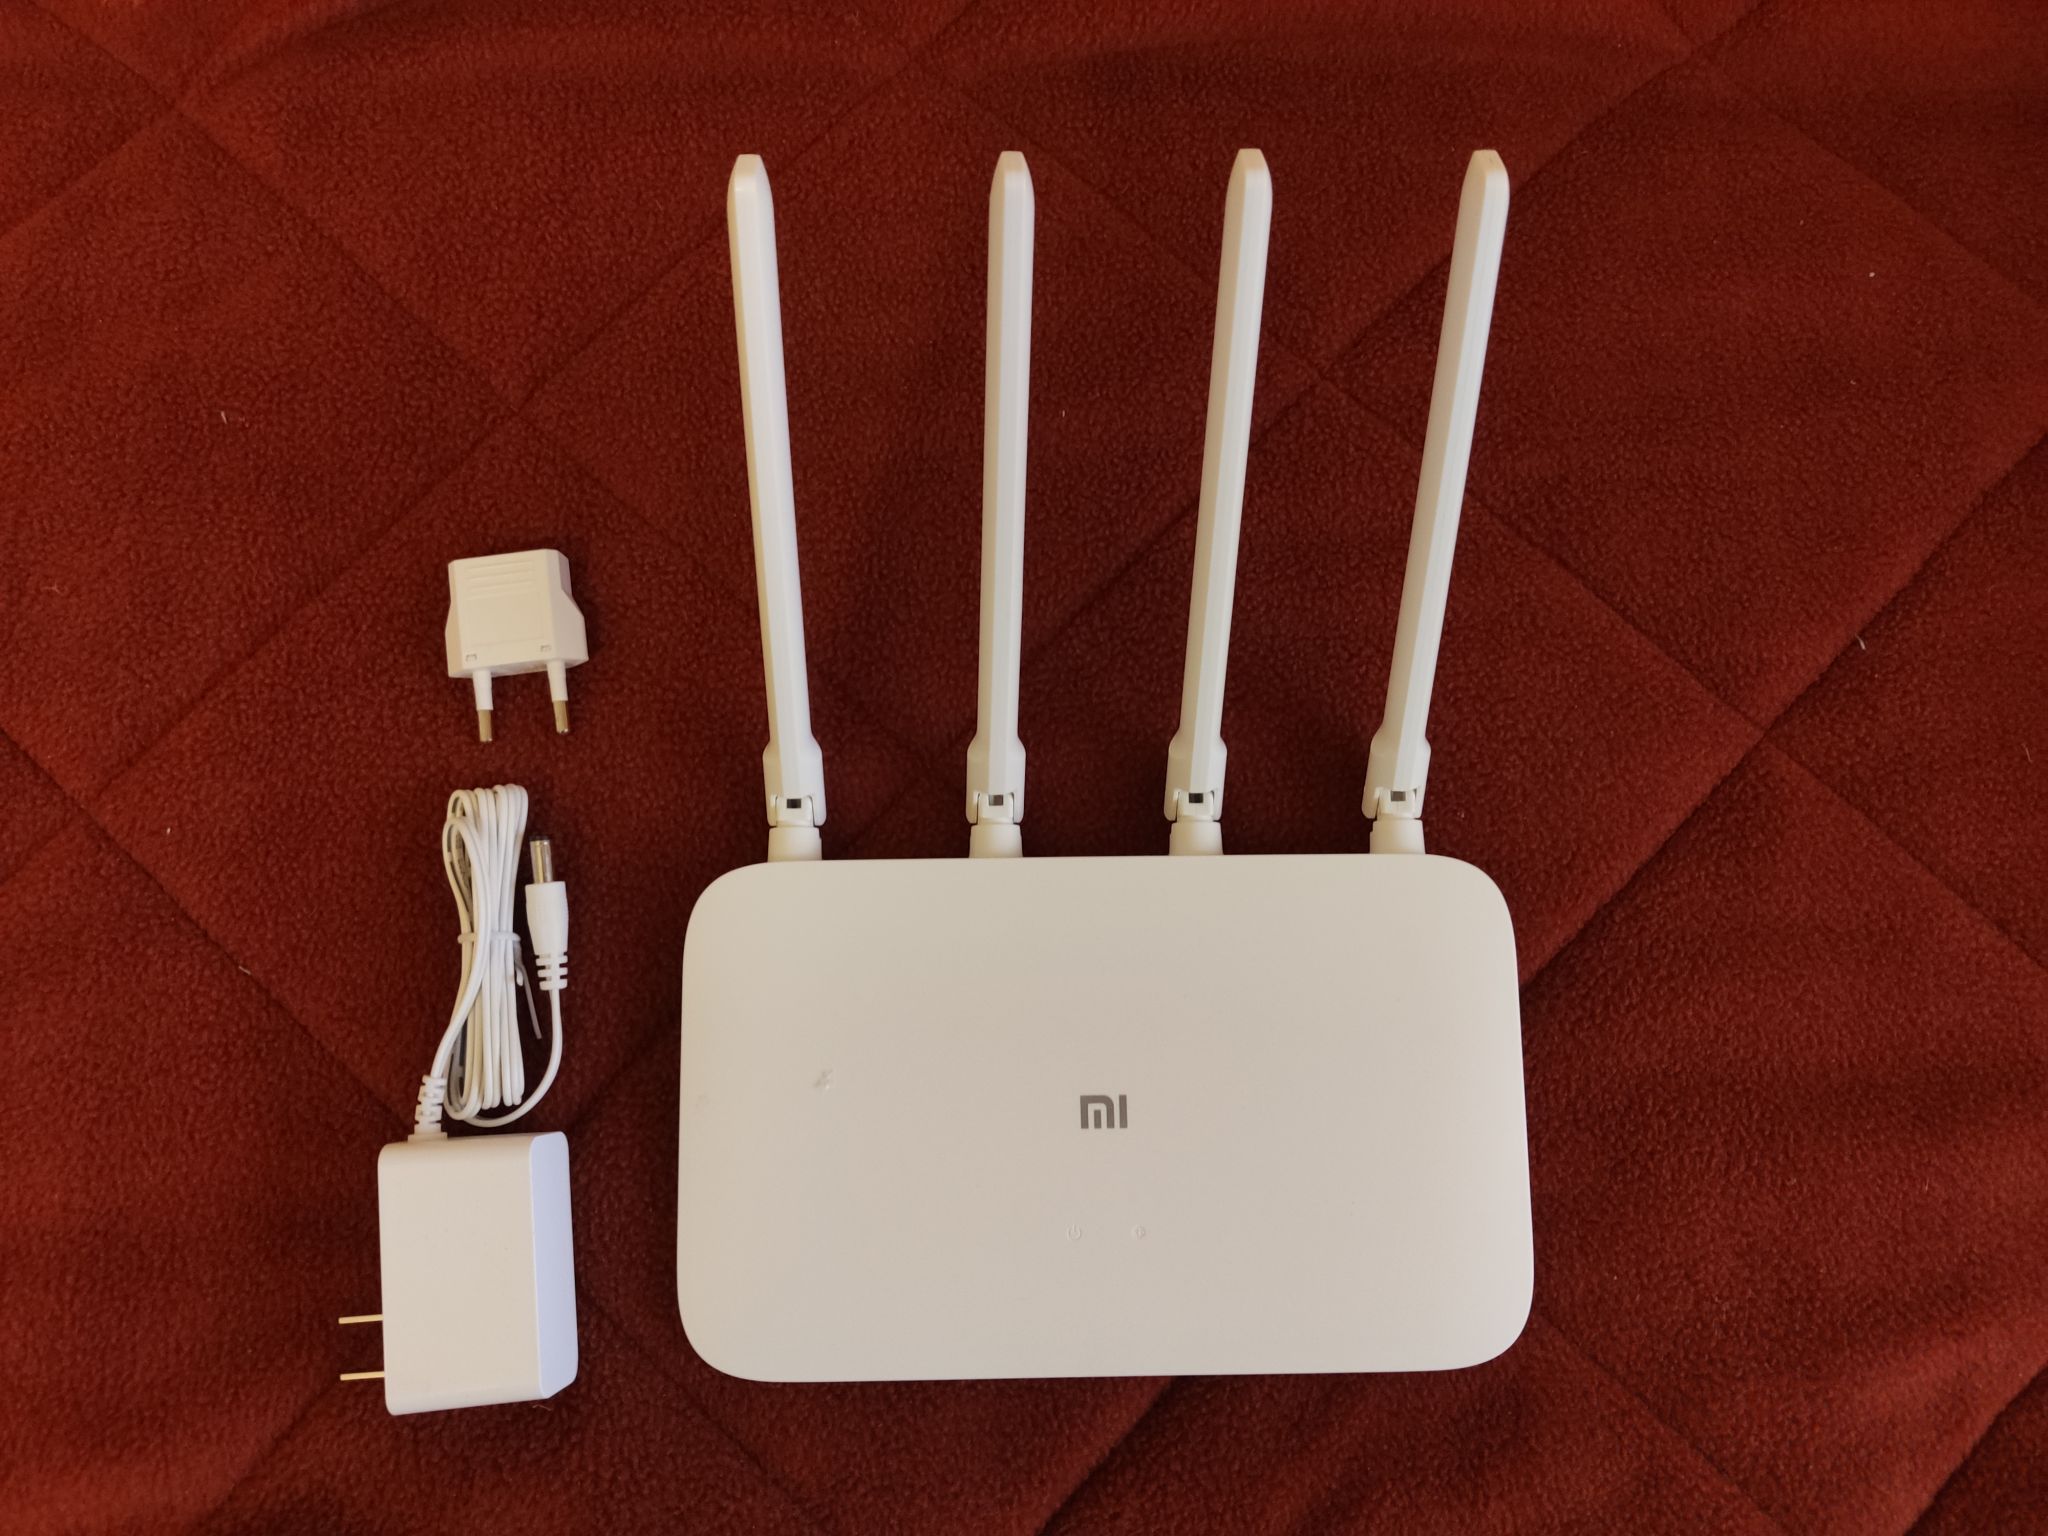 Wifi router 4a gigabit. Xiaomi mi Wi-Fi Router 4a. Xiaomi mi 4a роутер. Xiaomi mi WIFI Router 4a. Маршрутизатор Wi-Fi Xiaomi mi Router 4a.